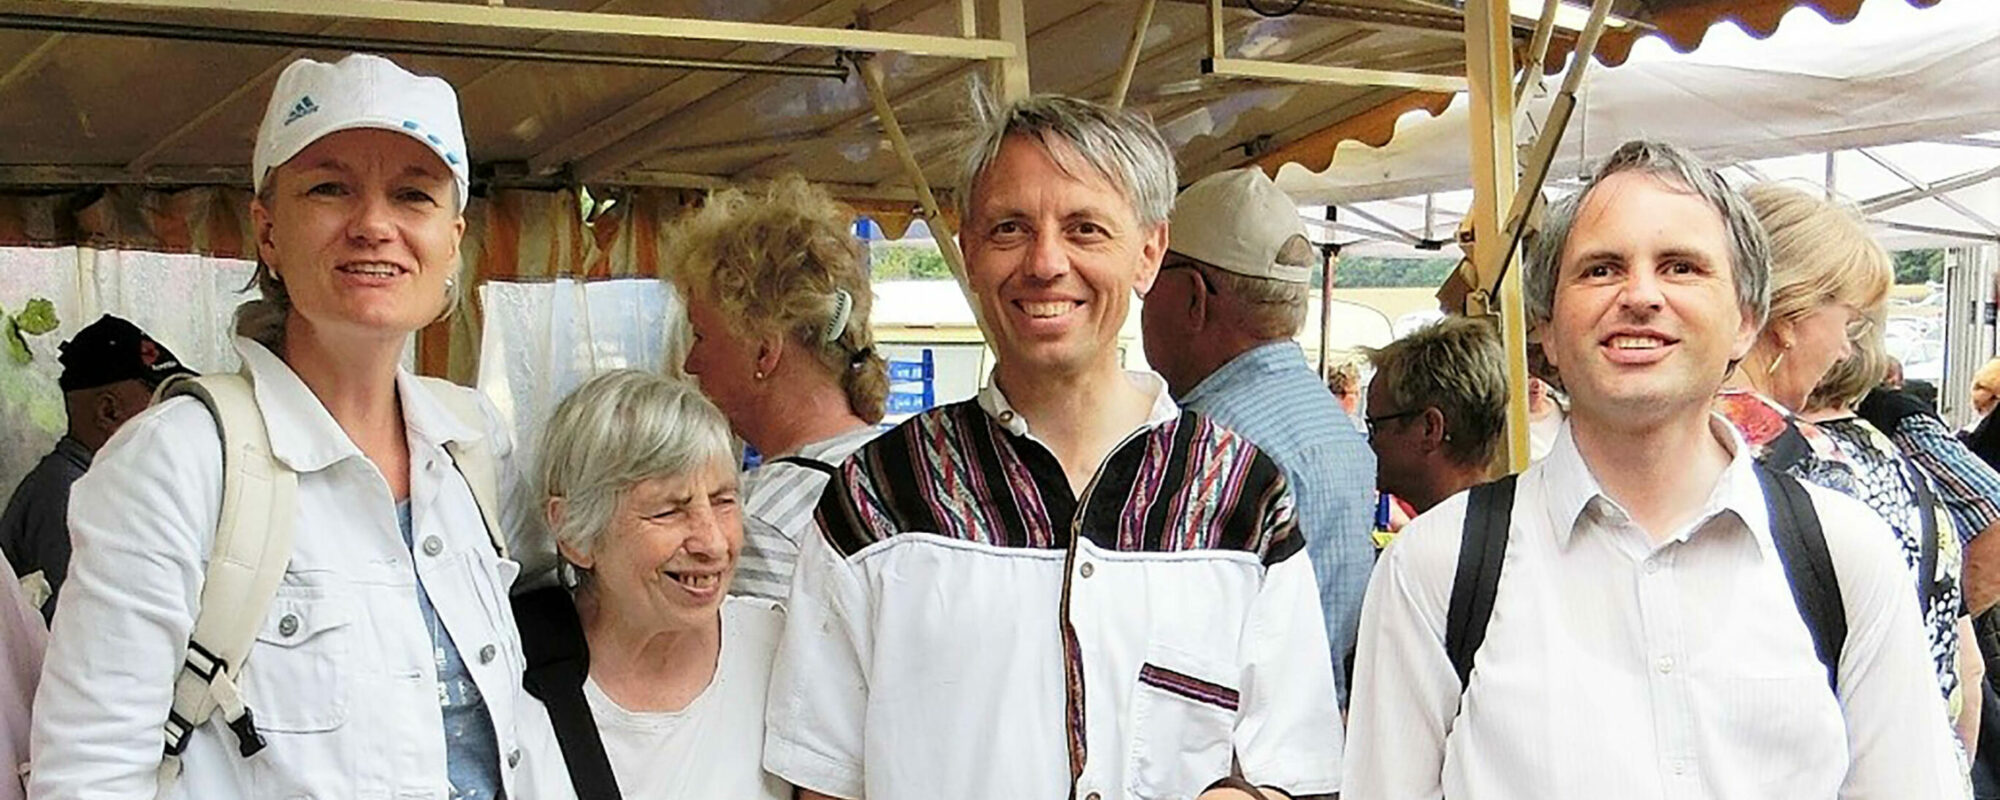 Jutta Hajek und Familie Müller auf dem Markt